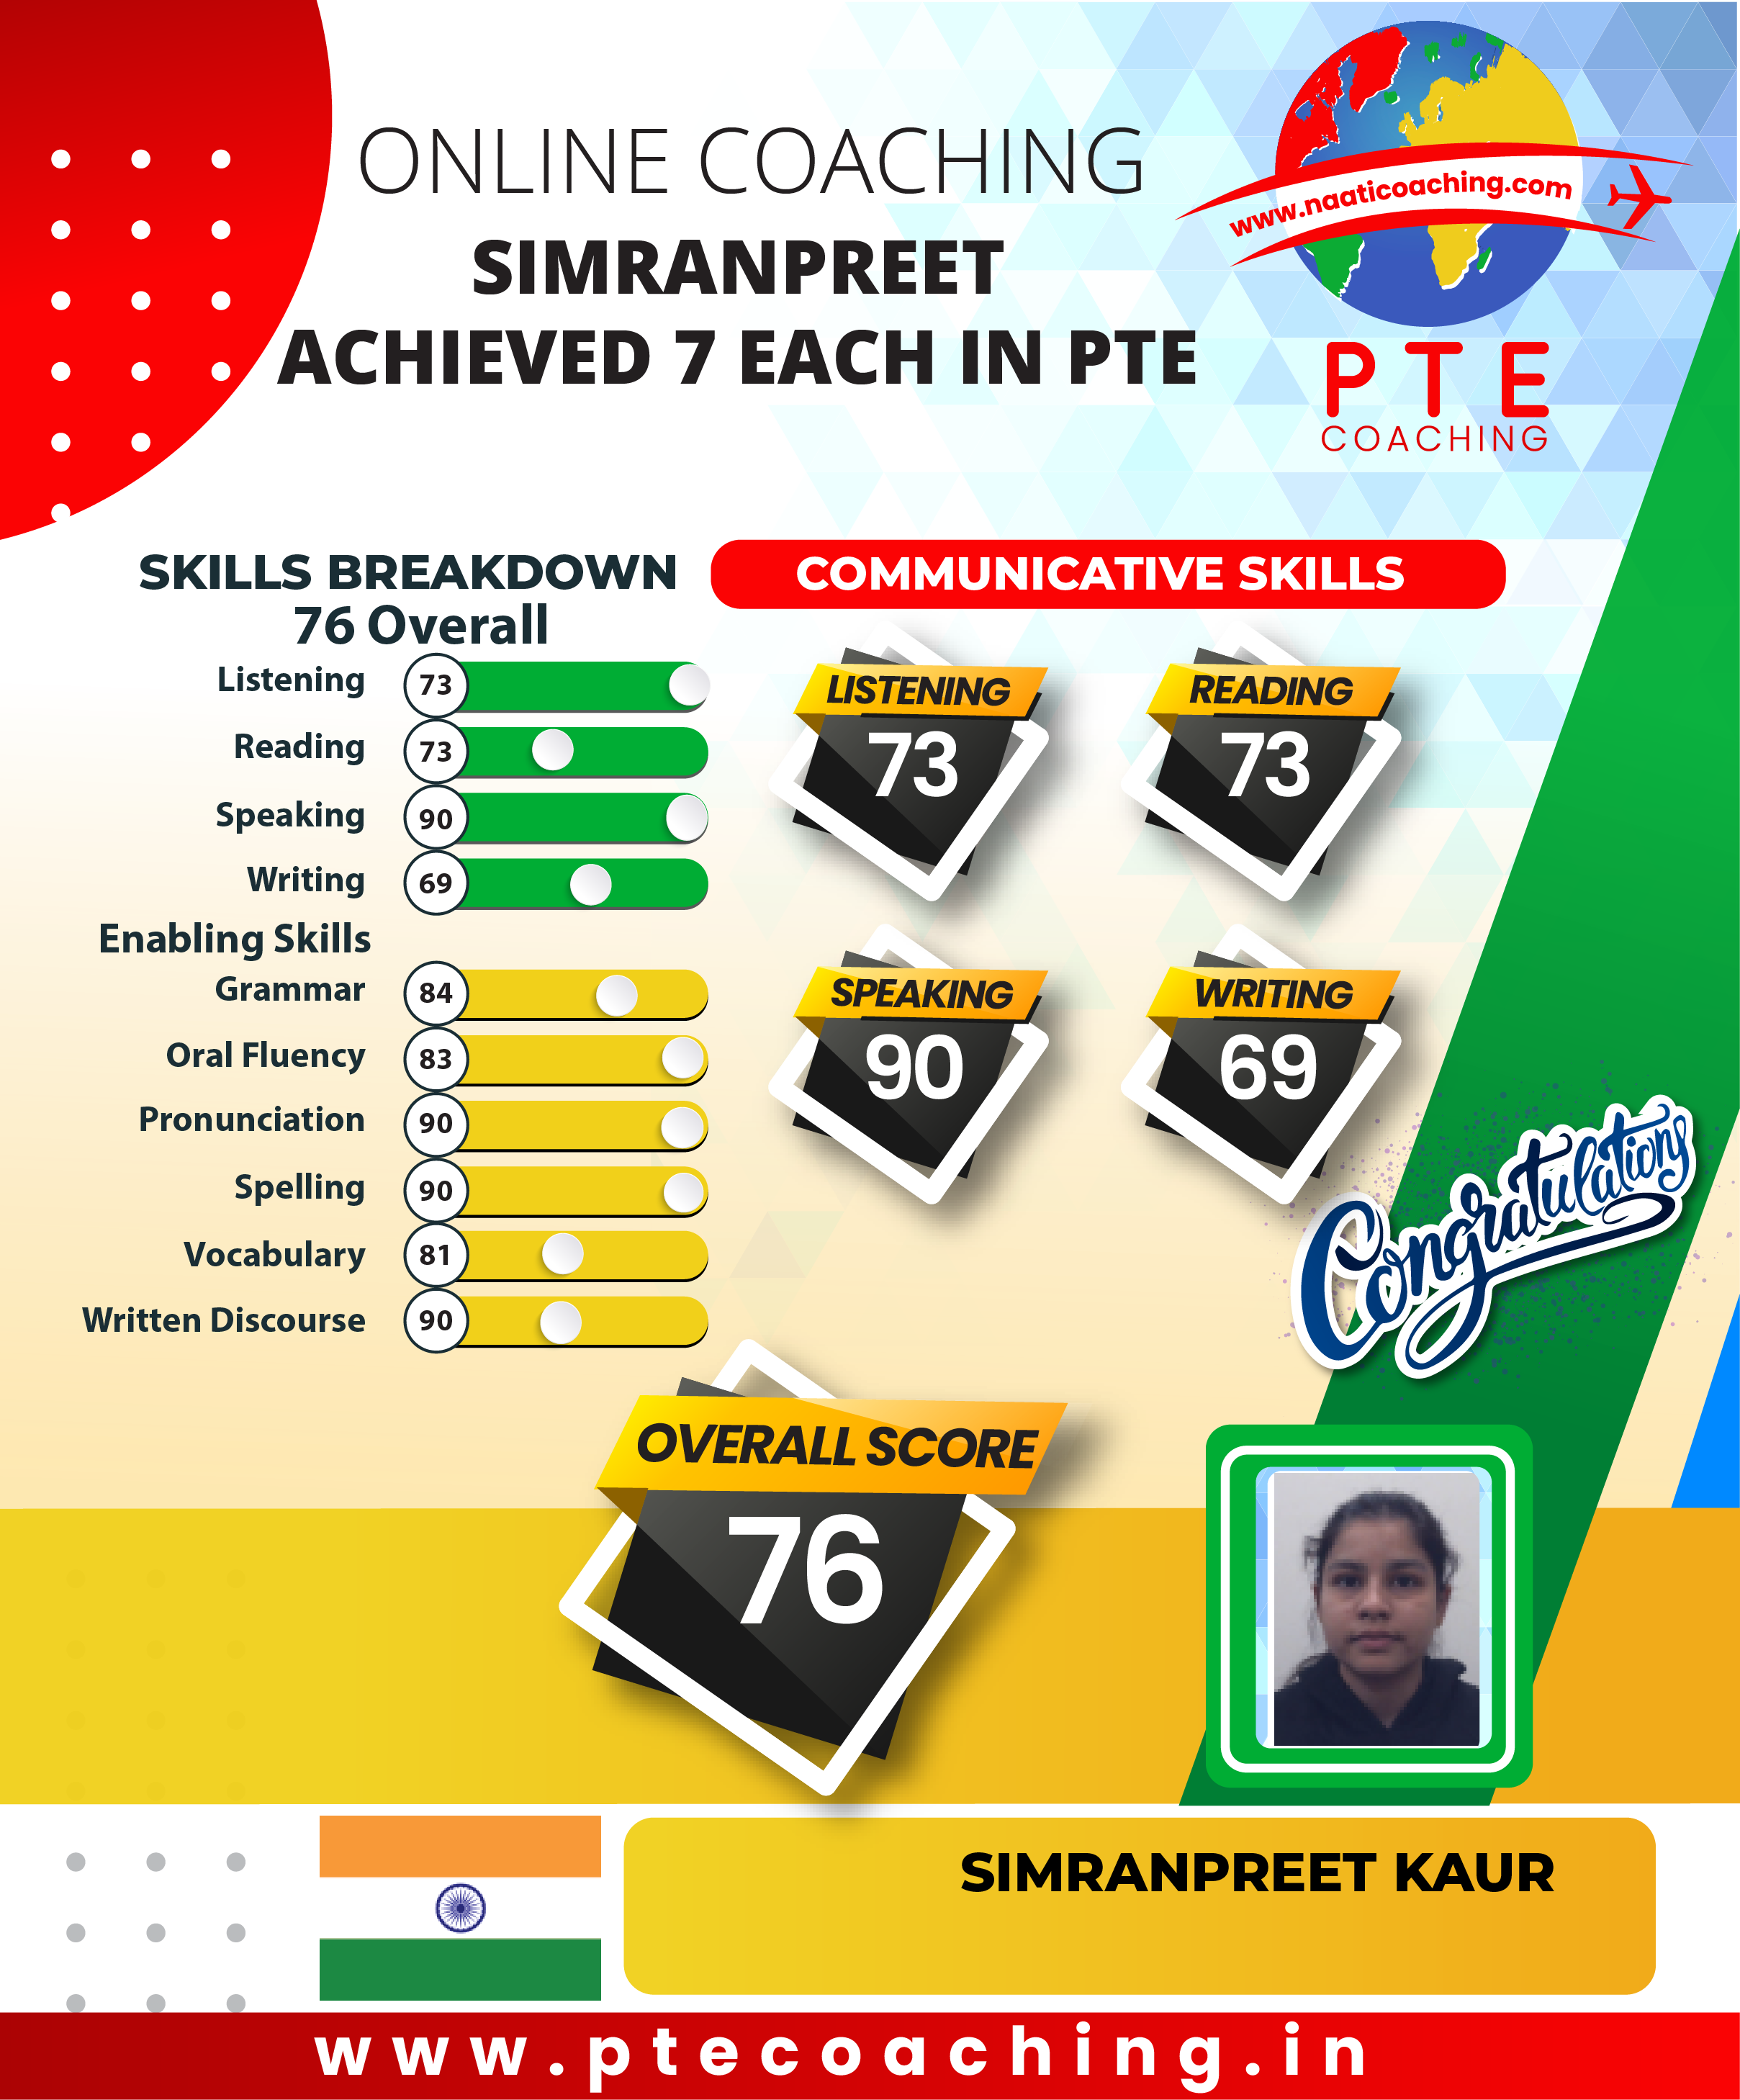 PTE Coaching Scorecard - Simranpreet achieved 7 each in PTE